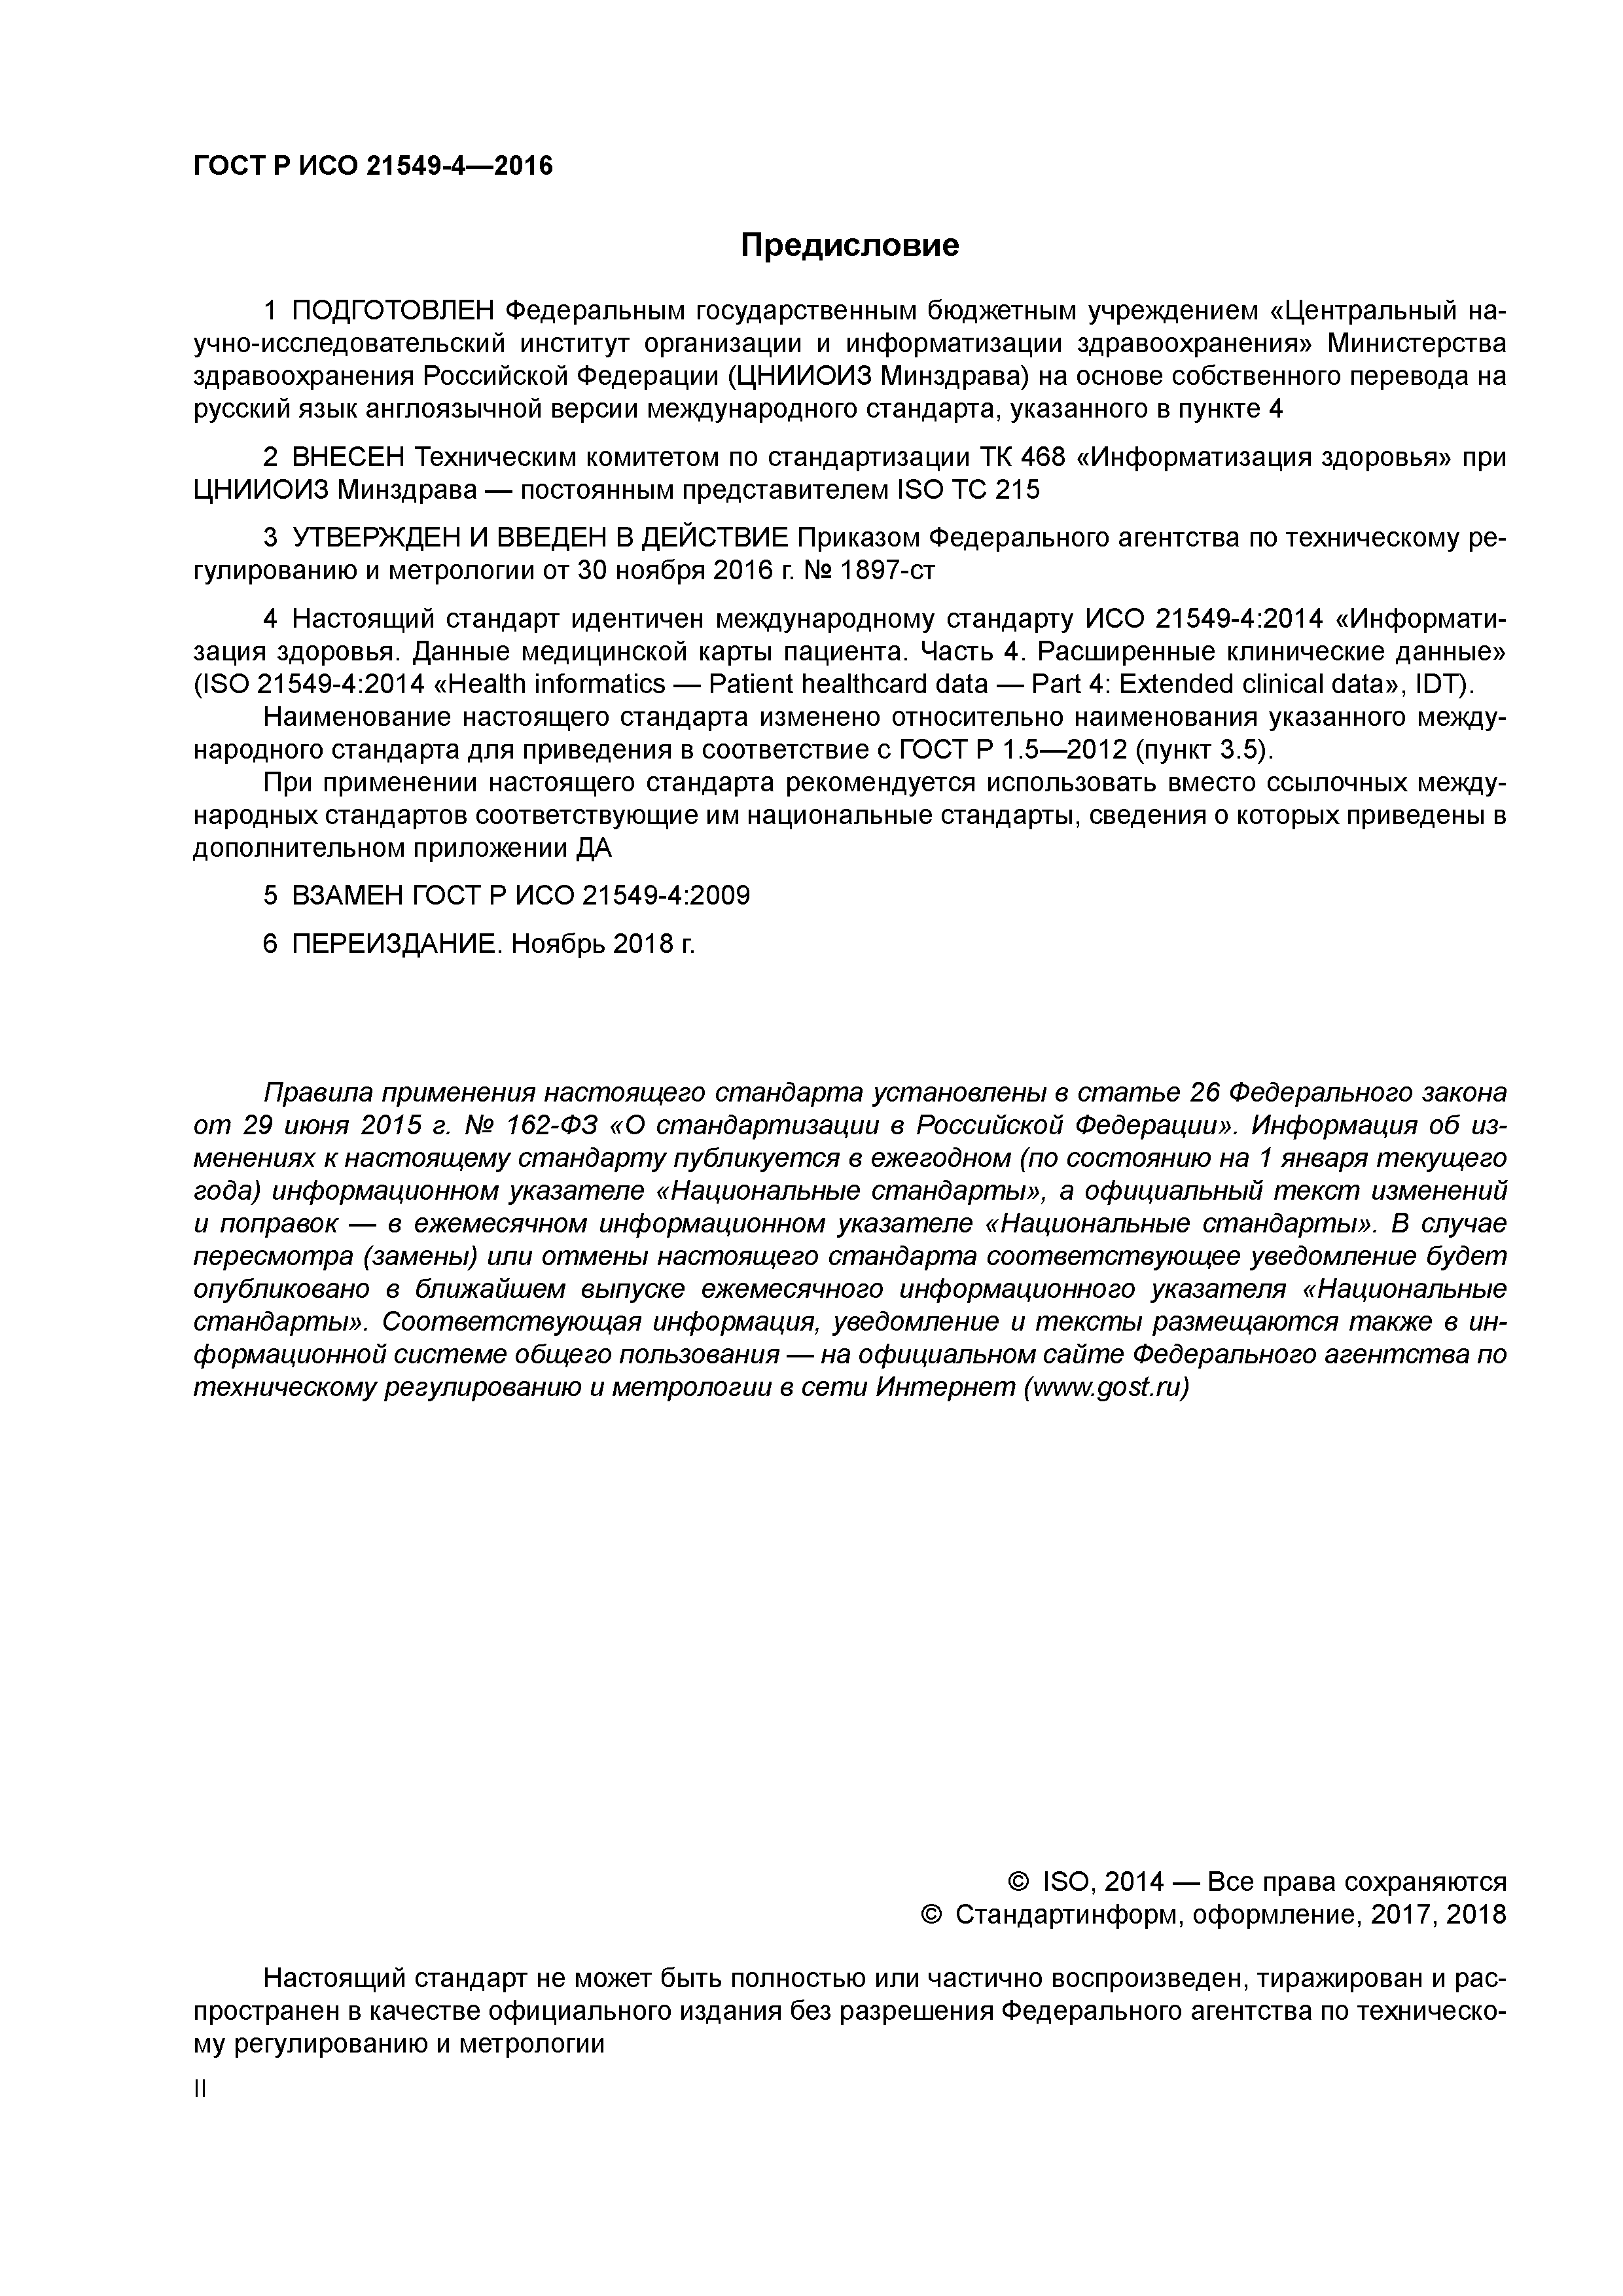 ГОСТ Р ИСО 21549-4-2016